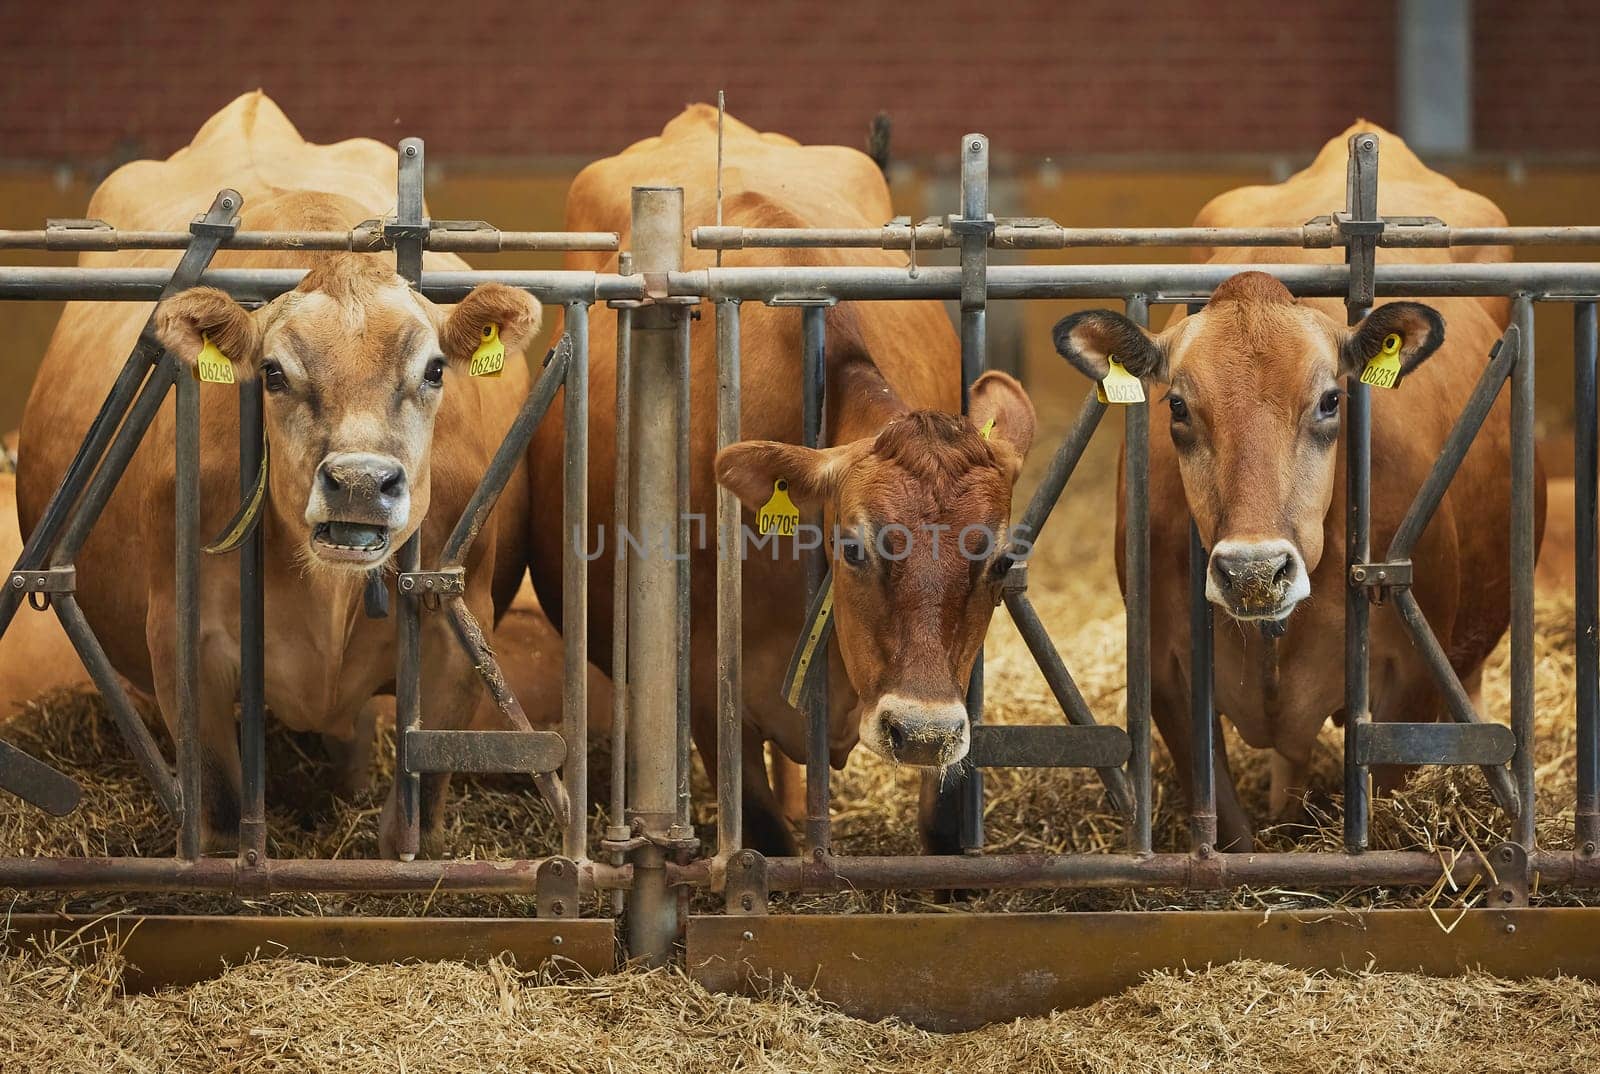 Cute Jersey cows on a farm in Denmark by Viktor_Osypenko